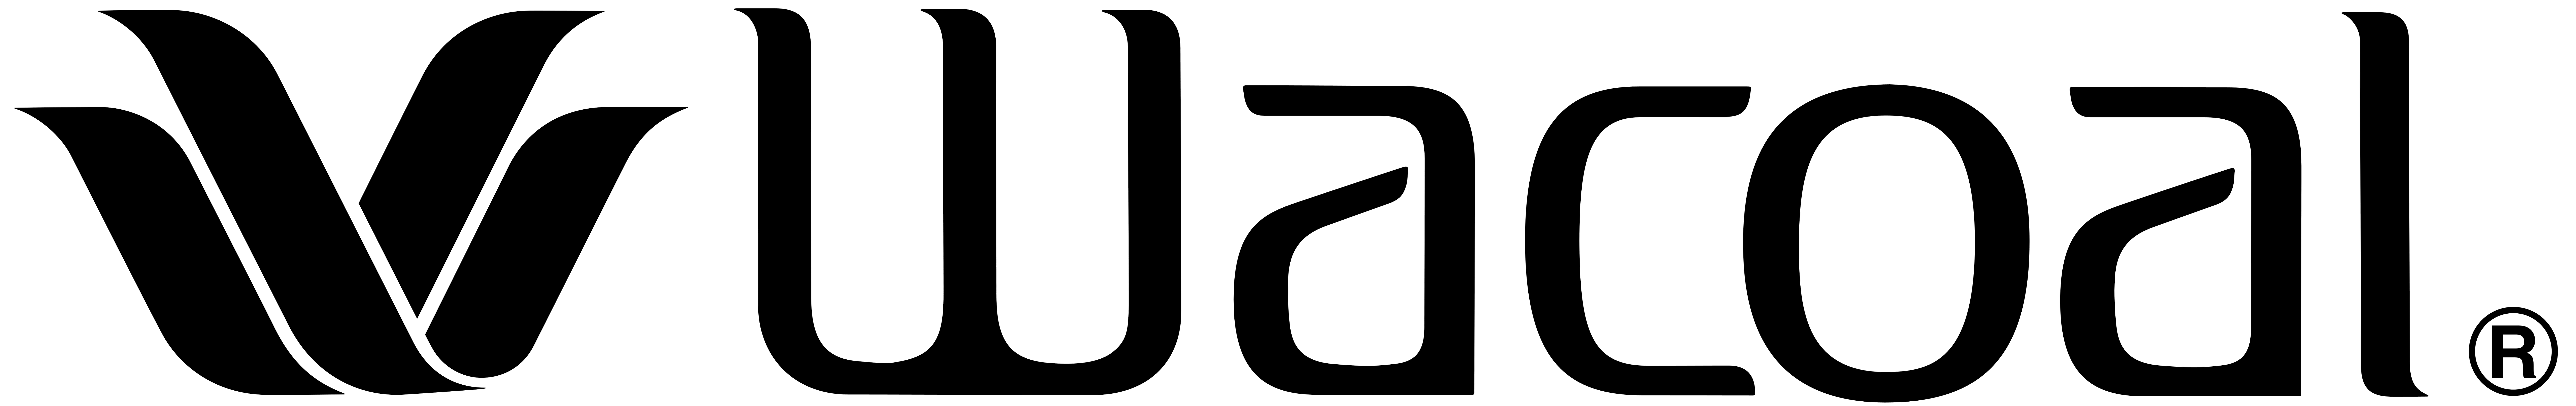 Wacoal Logo - Wacoal – Logos Download